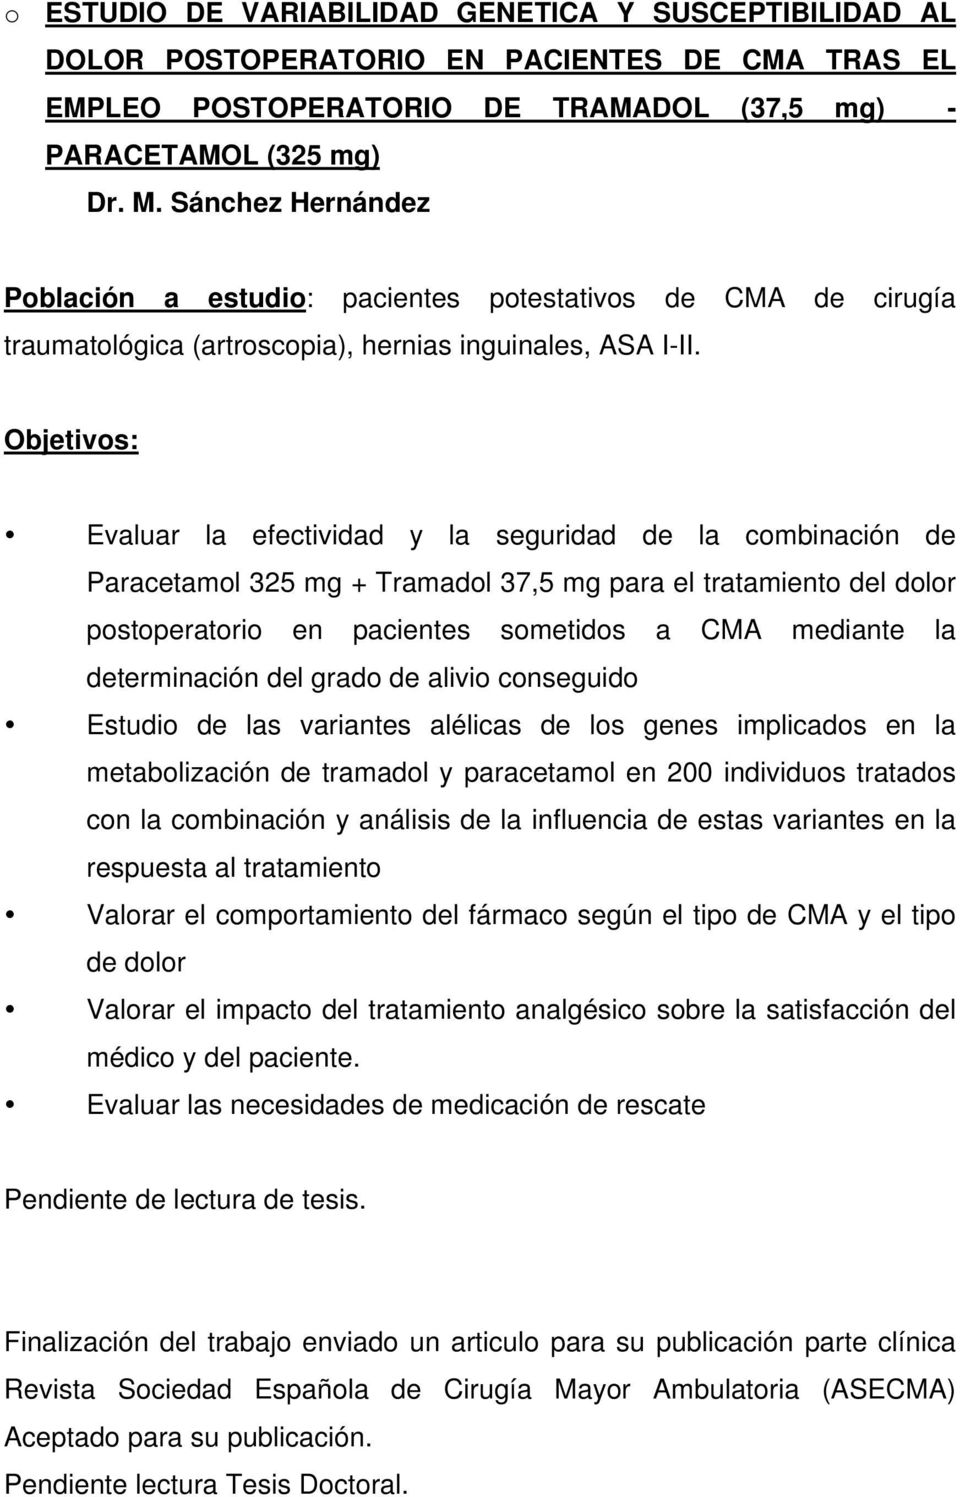 Objetivos: Evaluar la efectividad y la seguridad de la combinación de Paracetamol 325 mg + Tramadol 37,5 mg para el tratamiento del dolor postoperatorio en pacientes sometidos a CMA mediante la